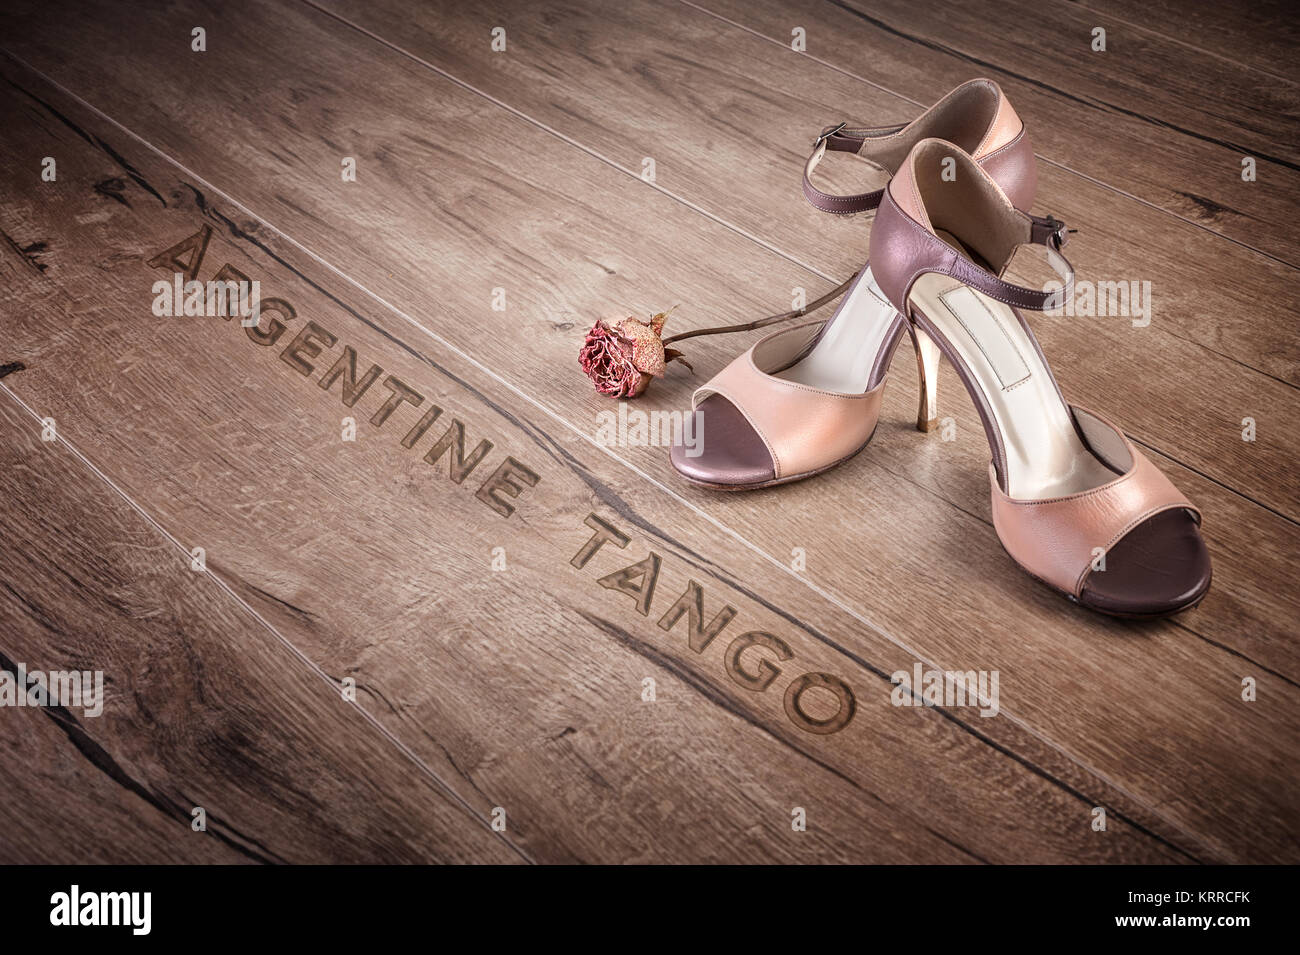 Chaussures de tango argentin et une rose à sec sur un sol en bois, légende "tango" Banque D'Images